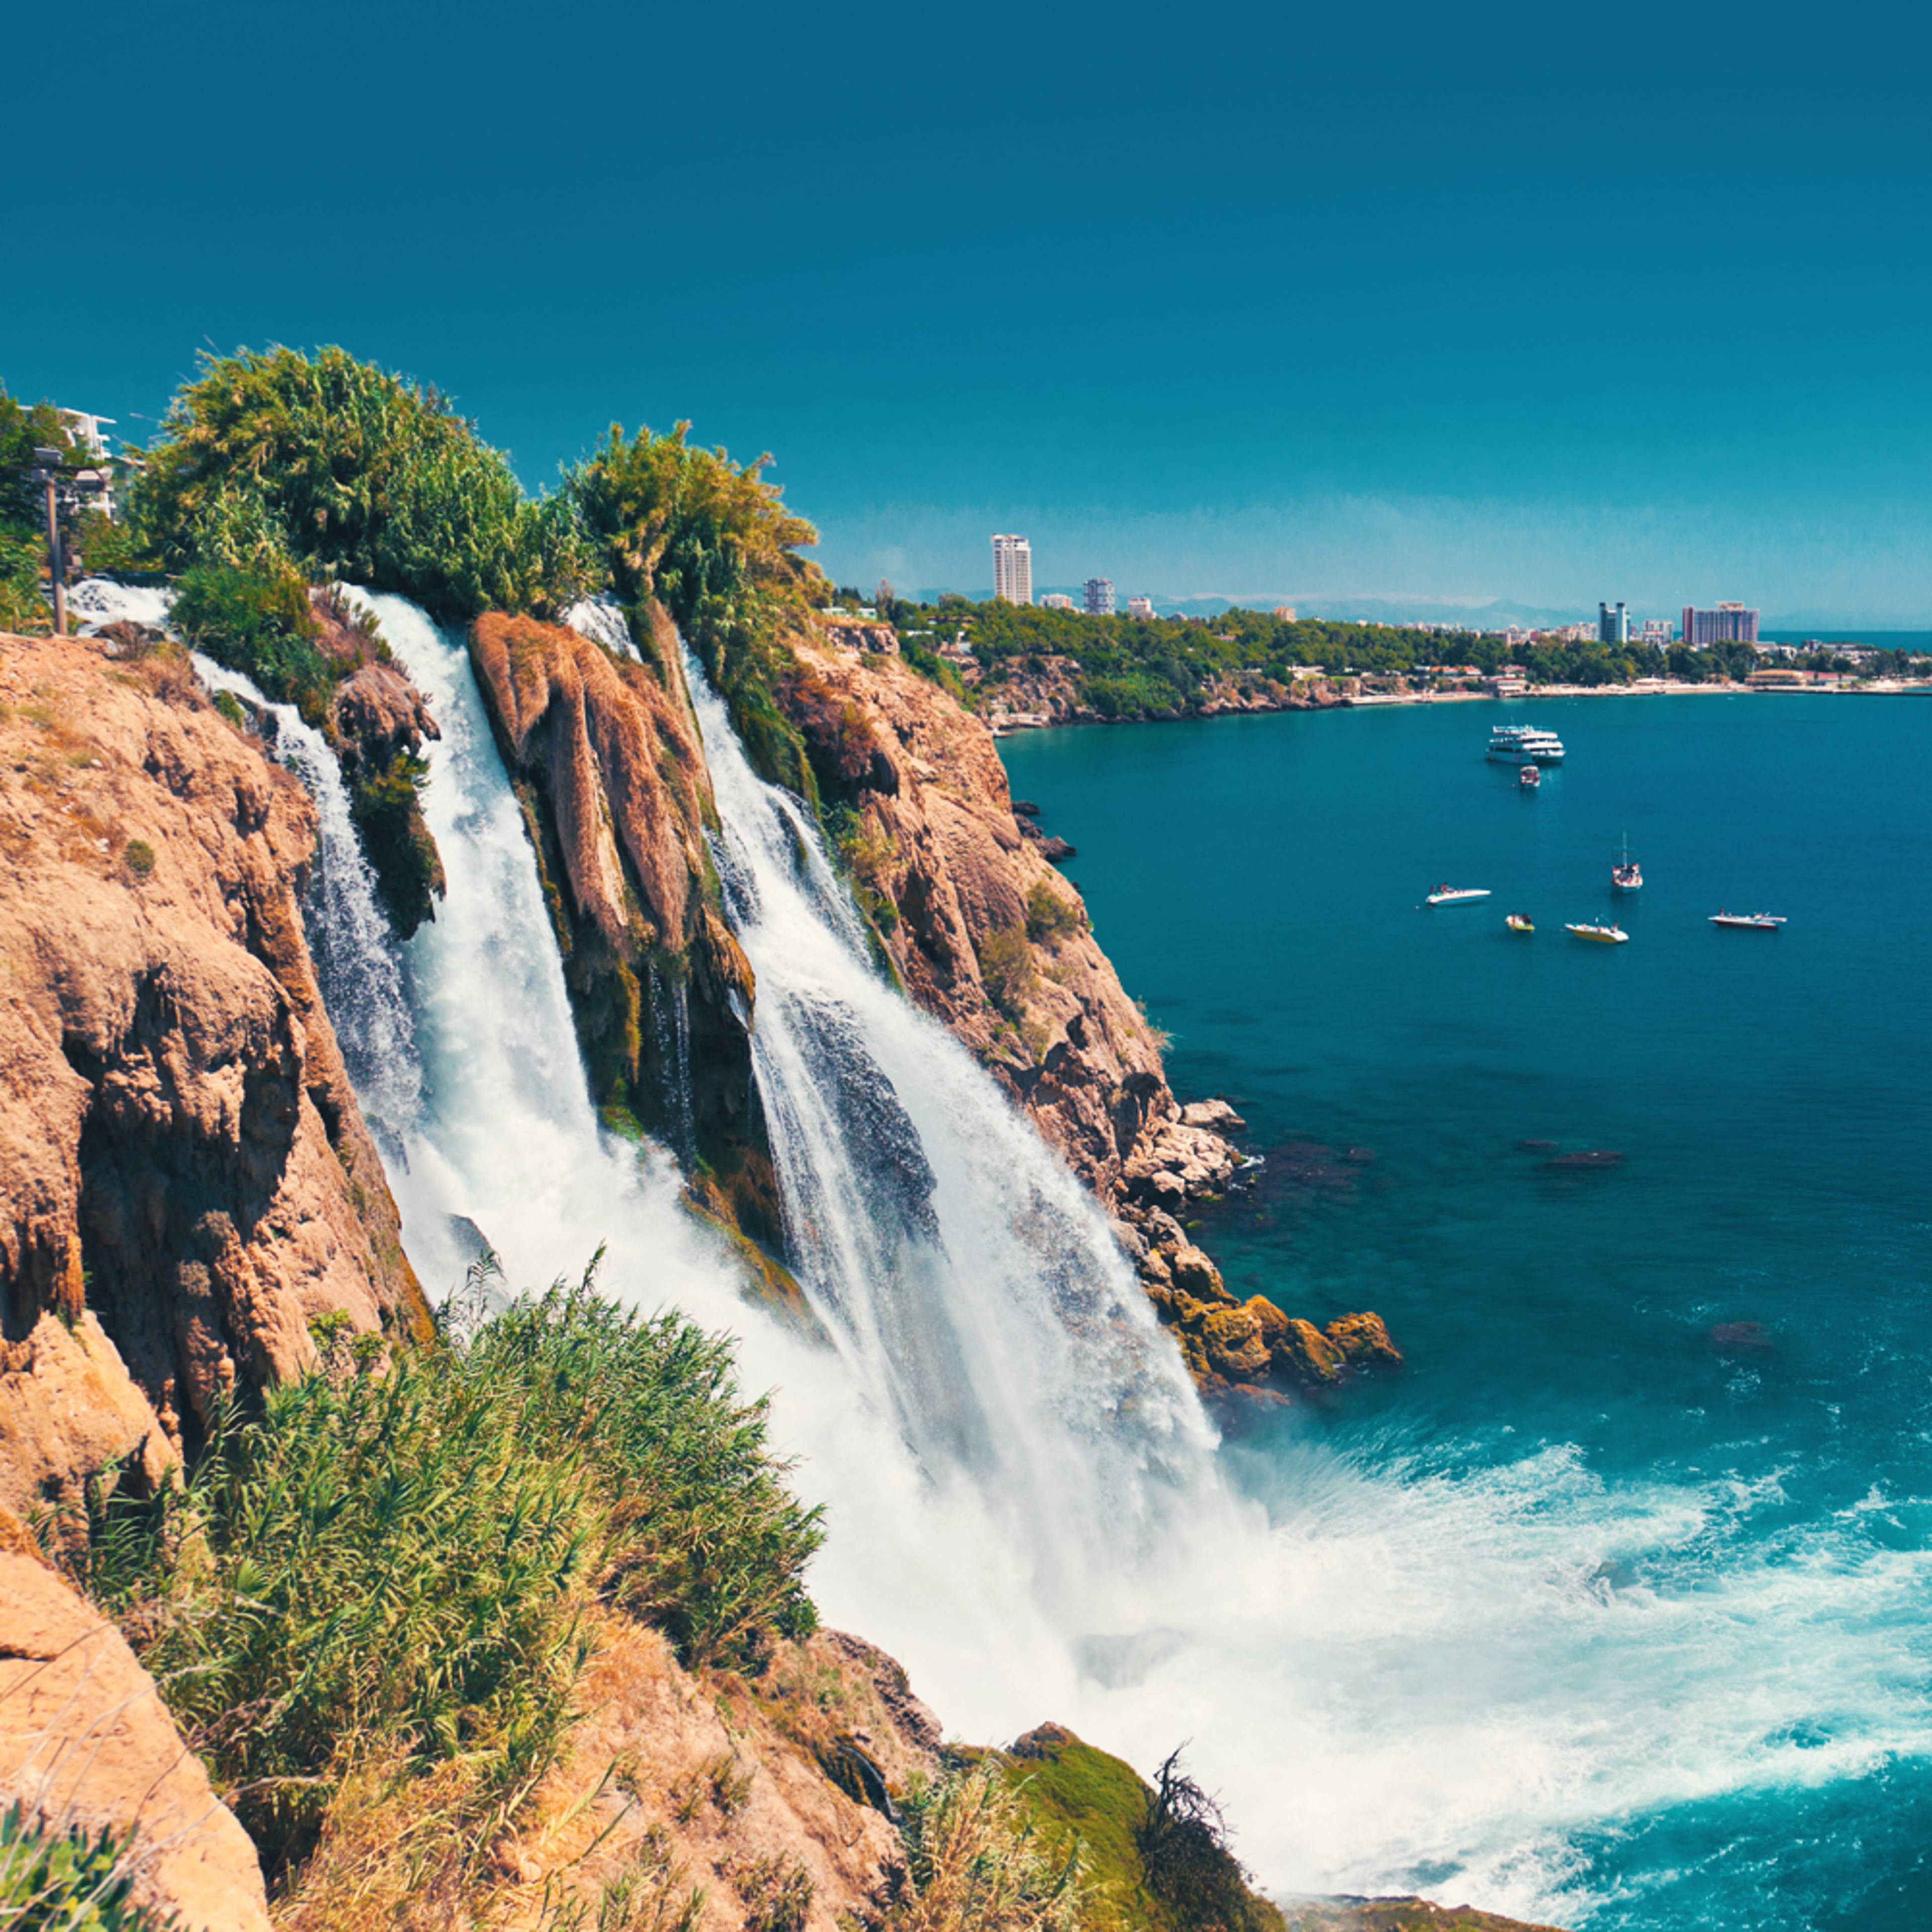 Crea il tuo viaggio in Turchia in estate, 100% su misura